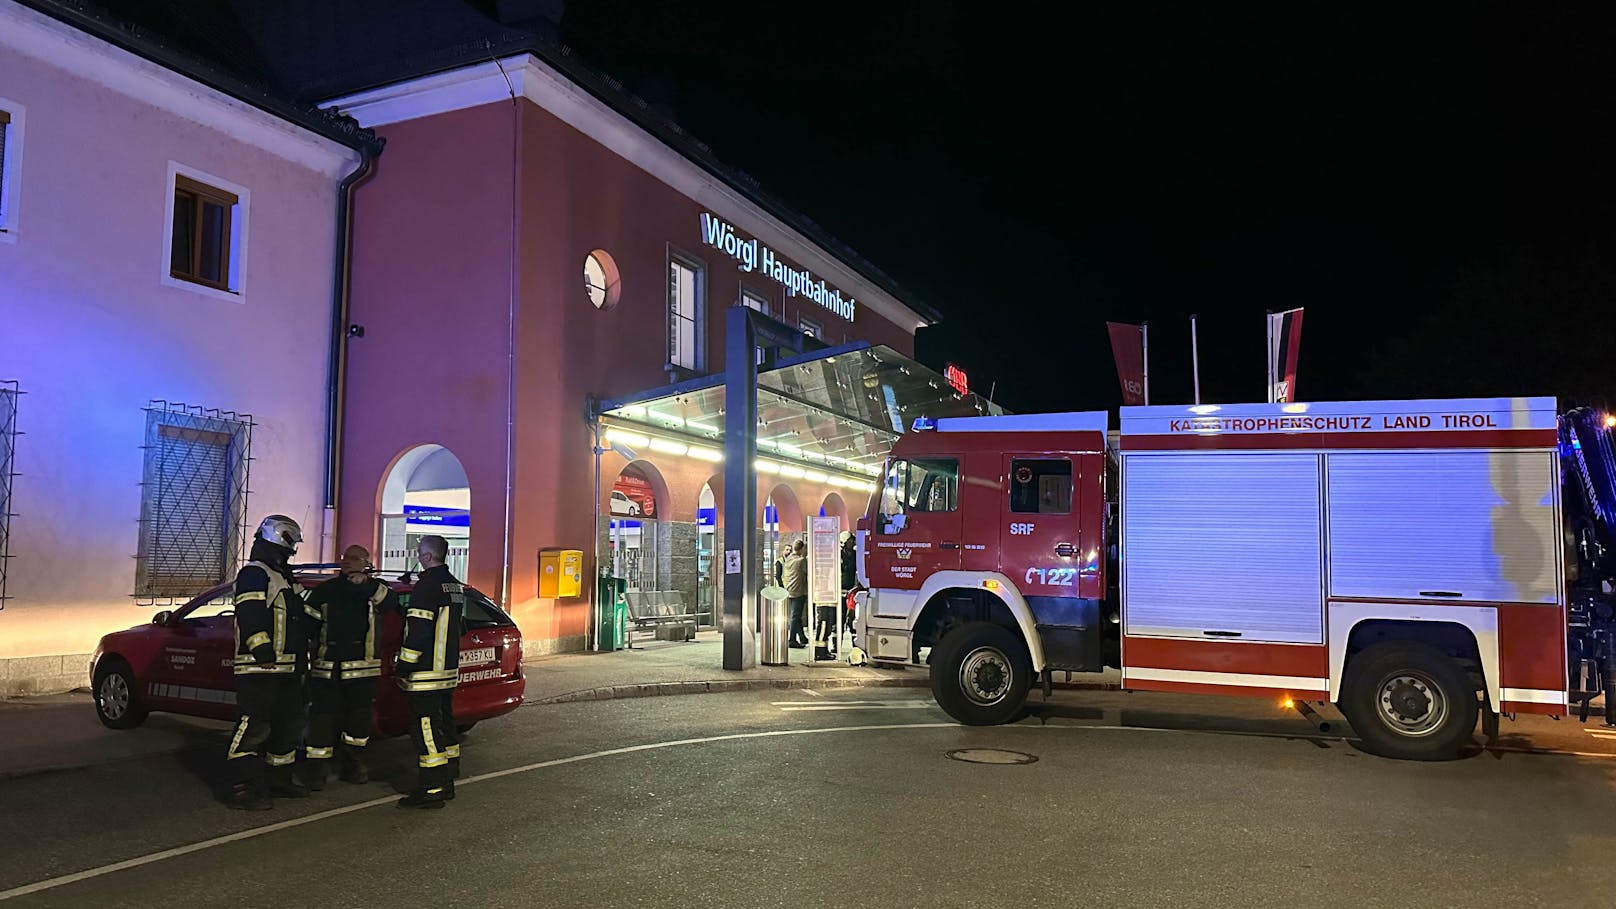 Am Mittwoch um 22:18 Uhr wurde der Leitstelle Tirol über den Notfallkoordinator der ÖBB-Betriebsführungszentrale ein "Gefahrengutunfall" am Bahnhof in Wörgl am Bahngleis 16 gemeldet.